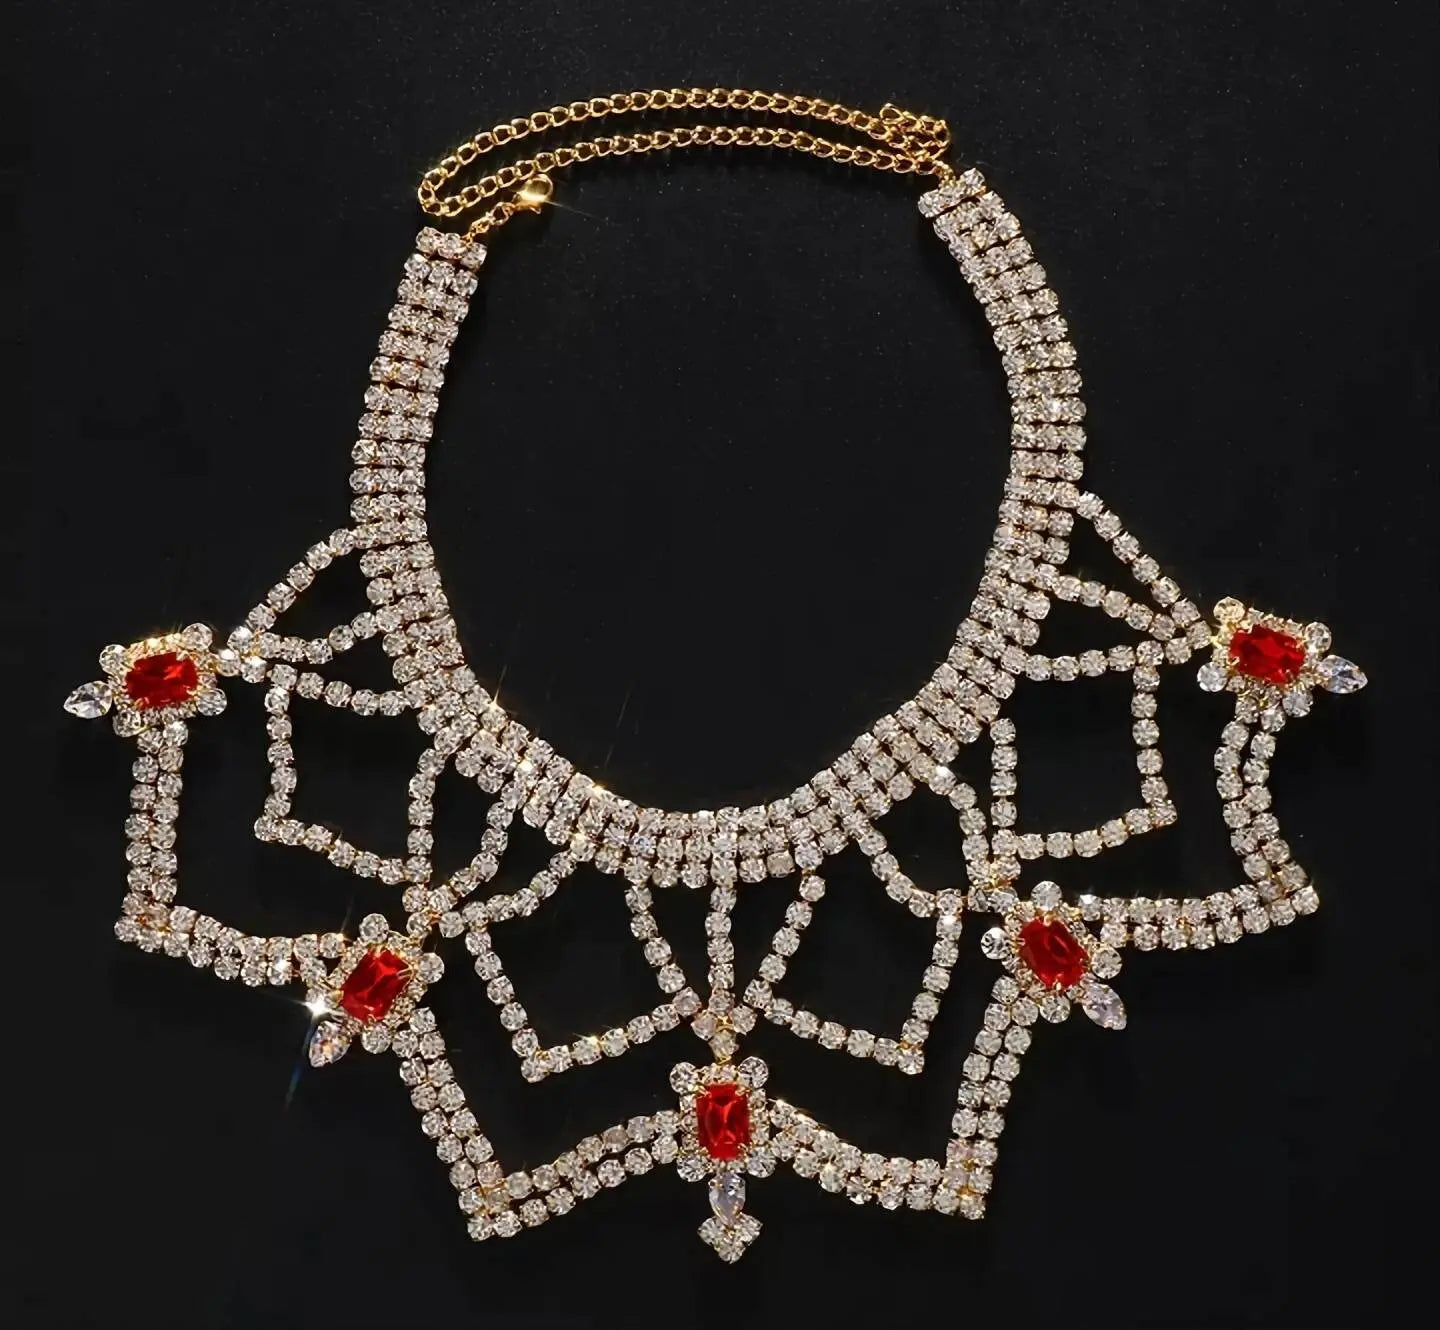 Luxury Womens Big Chunky Crystal Choker Rhinestone Pendant Necklace Statement Necklace JettsJewelers